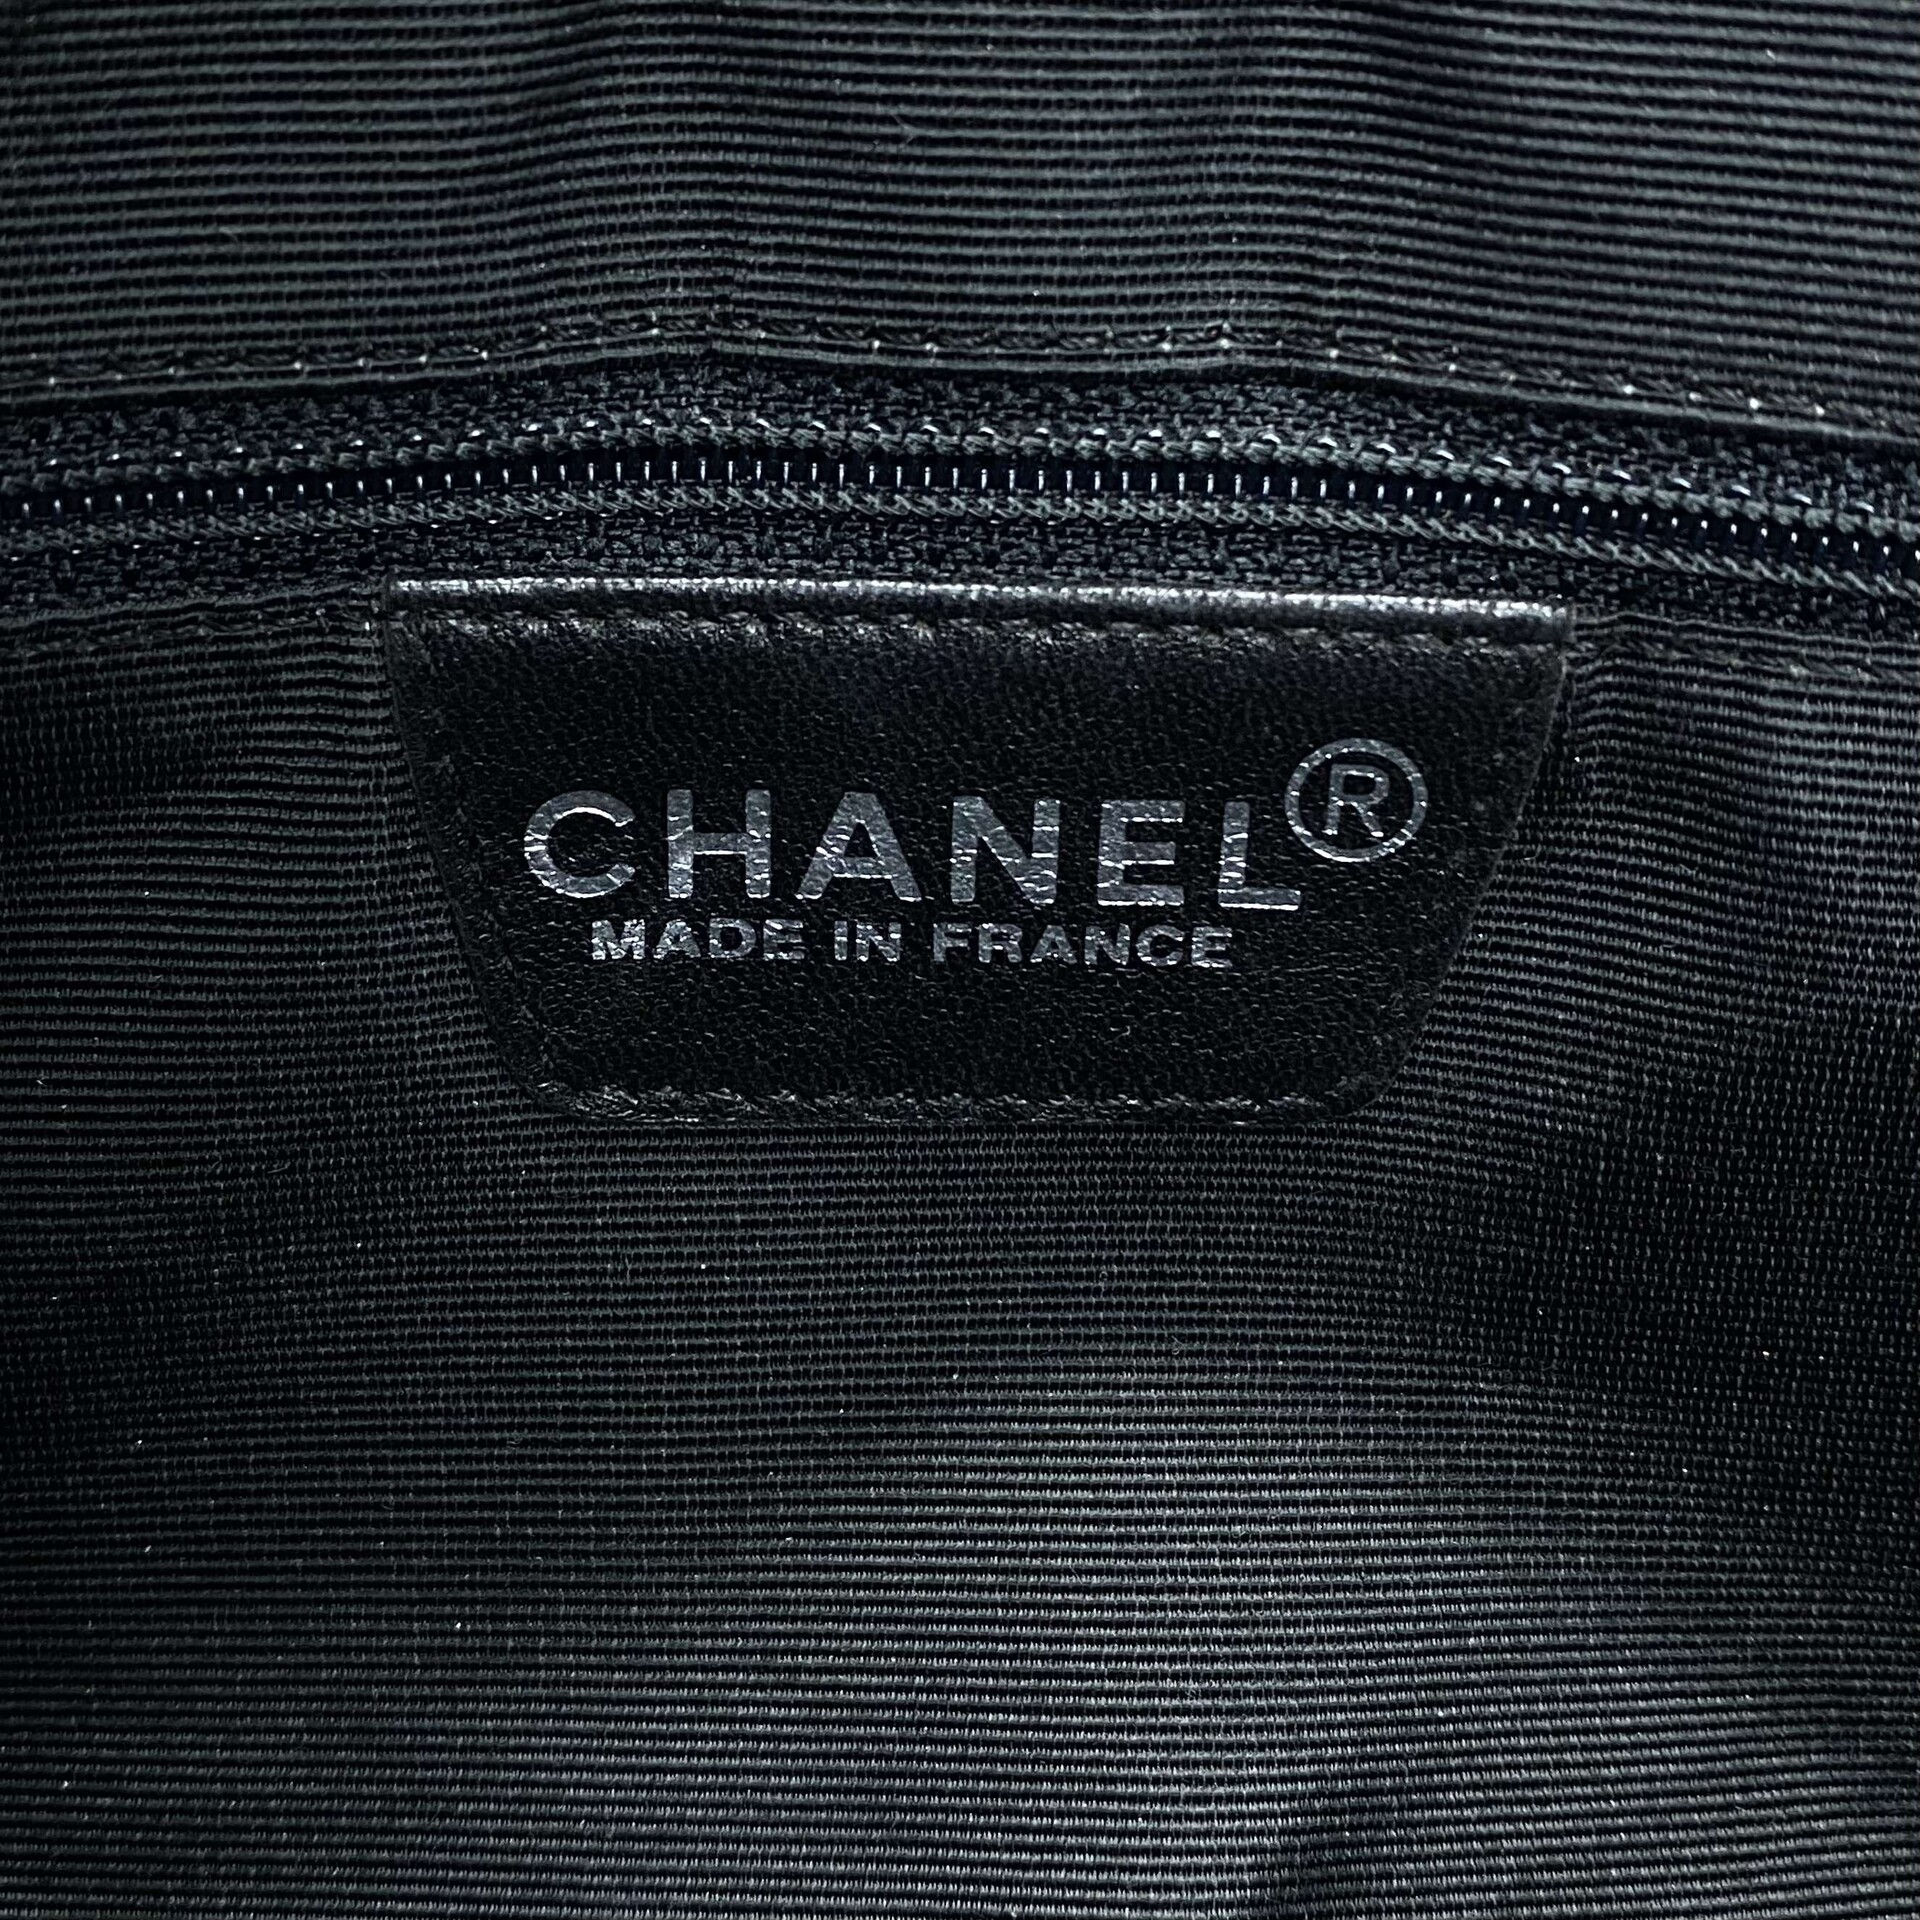 Bolsa Chanel Multicolor